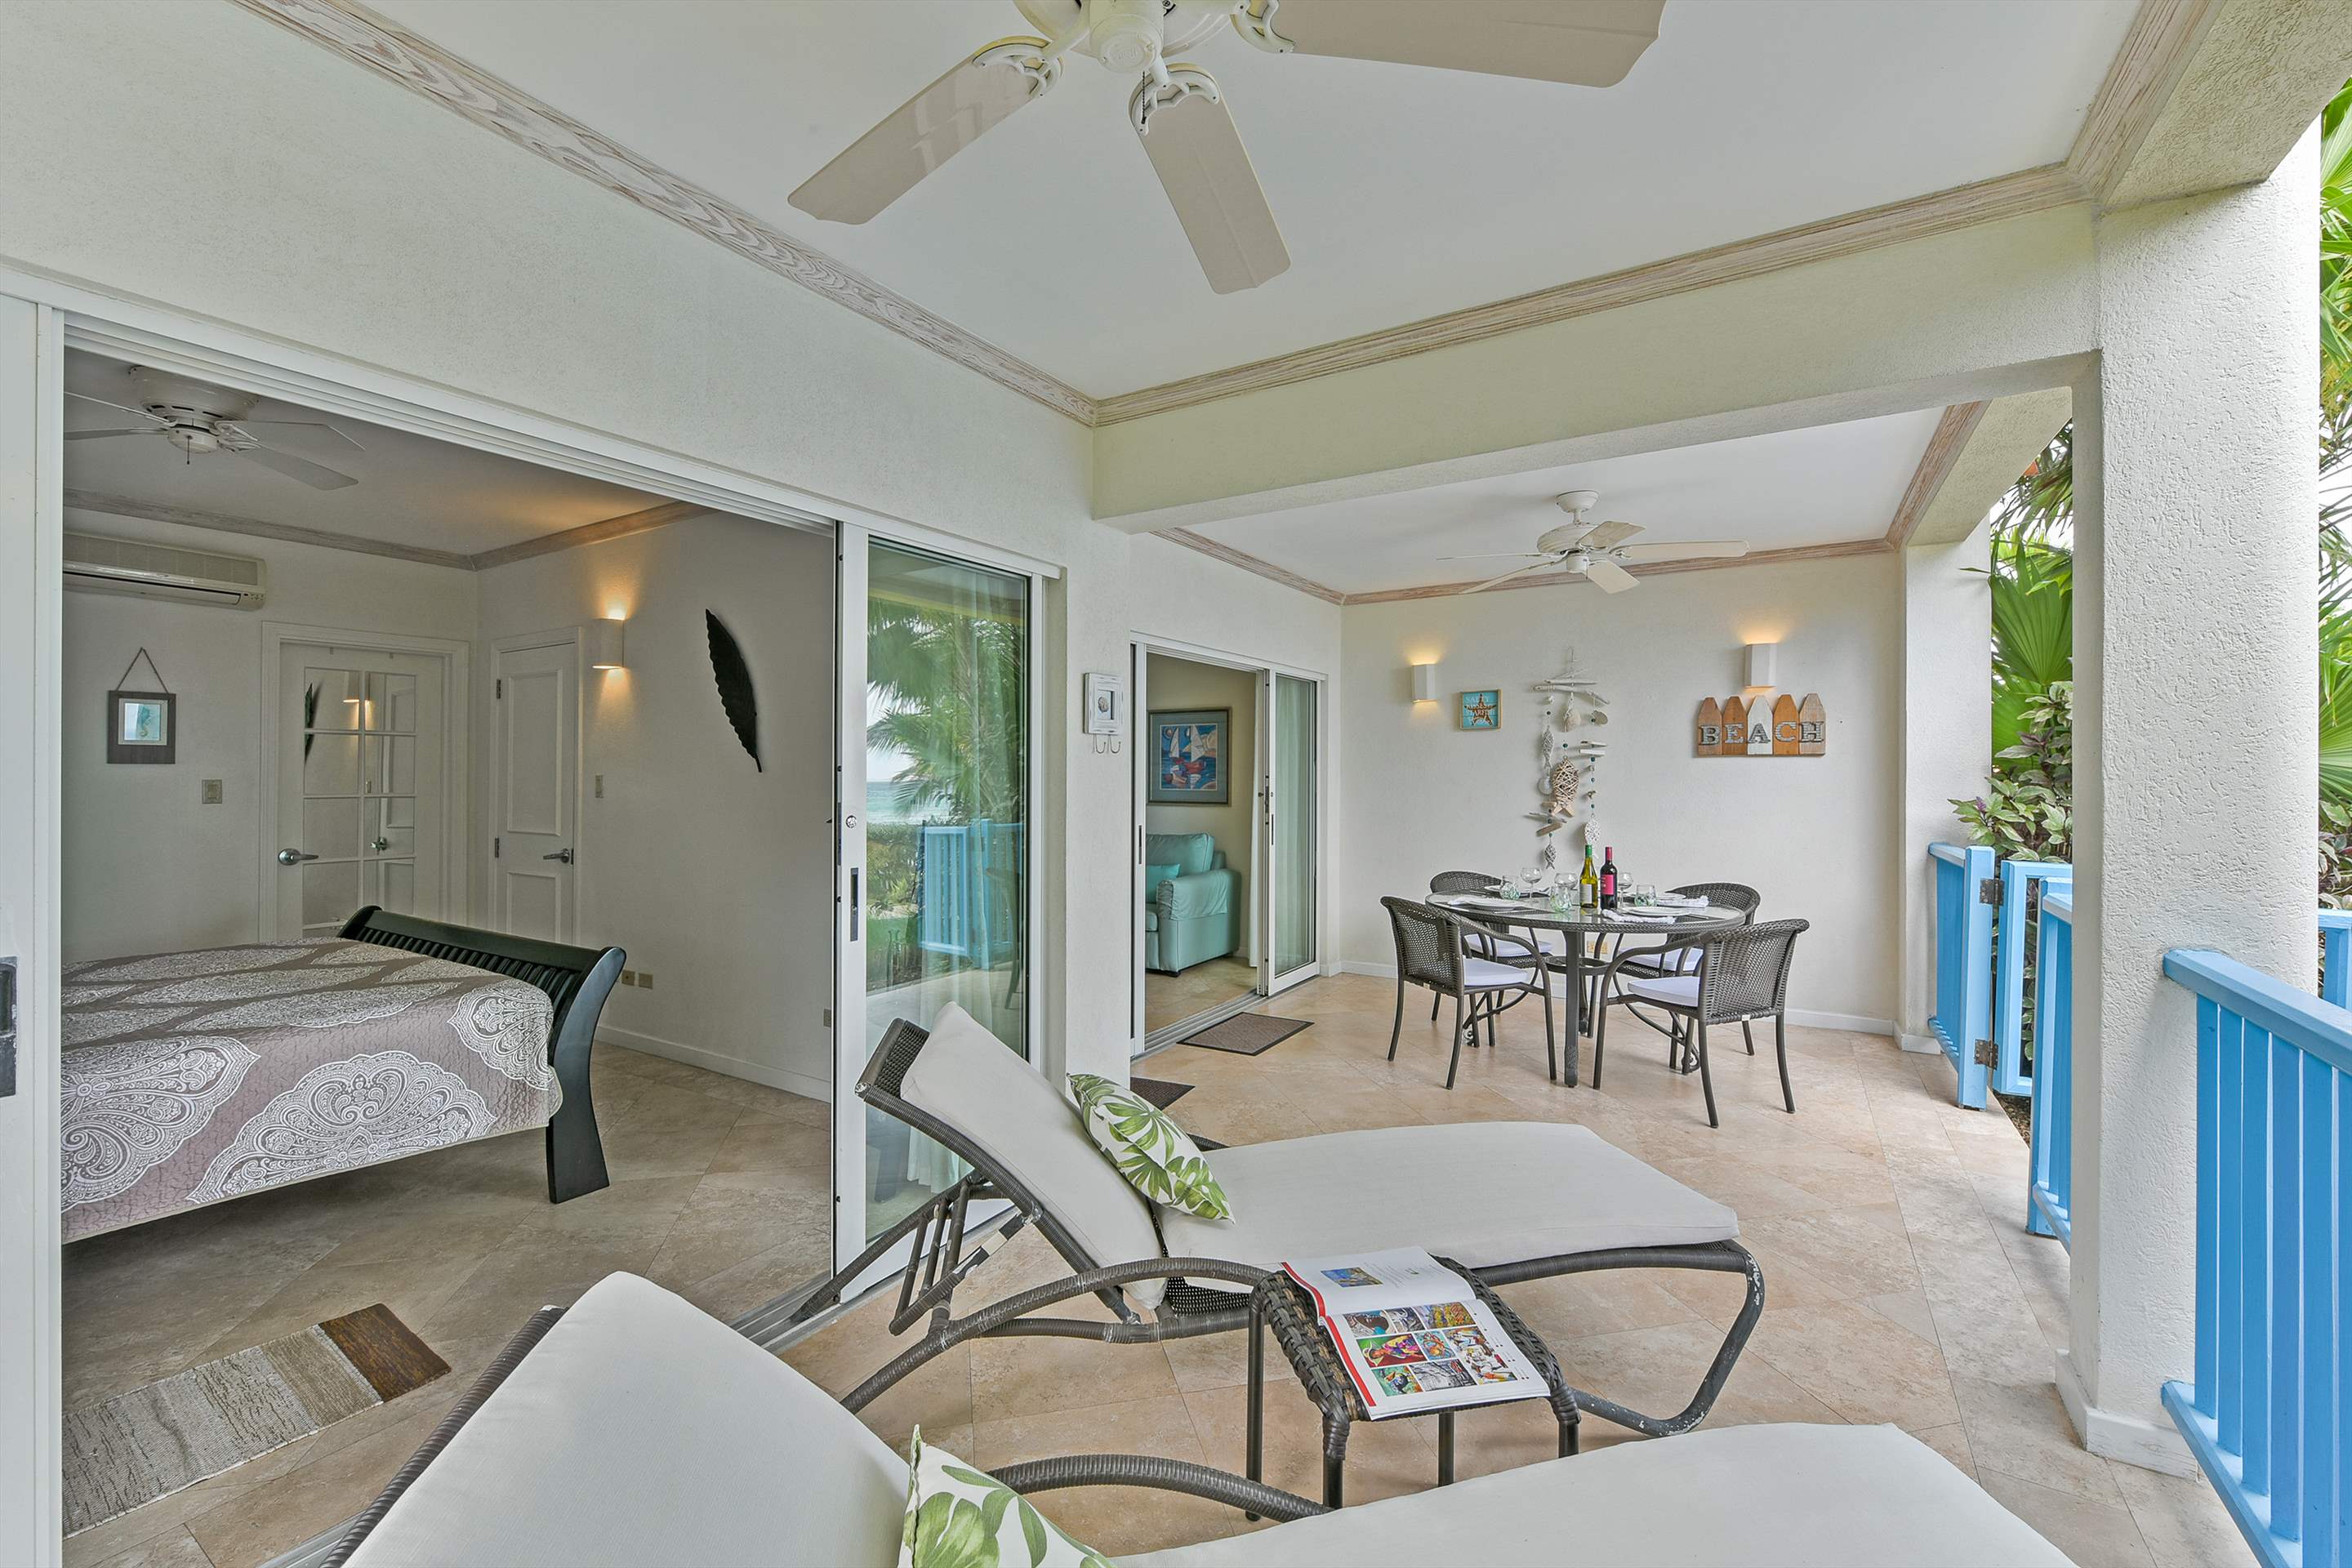 Maxwell Beach Villas 101, 2 bedroom, 2 bedroom apartment in St. Lawrence Gap & South Coast, Barbados Photo #6